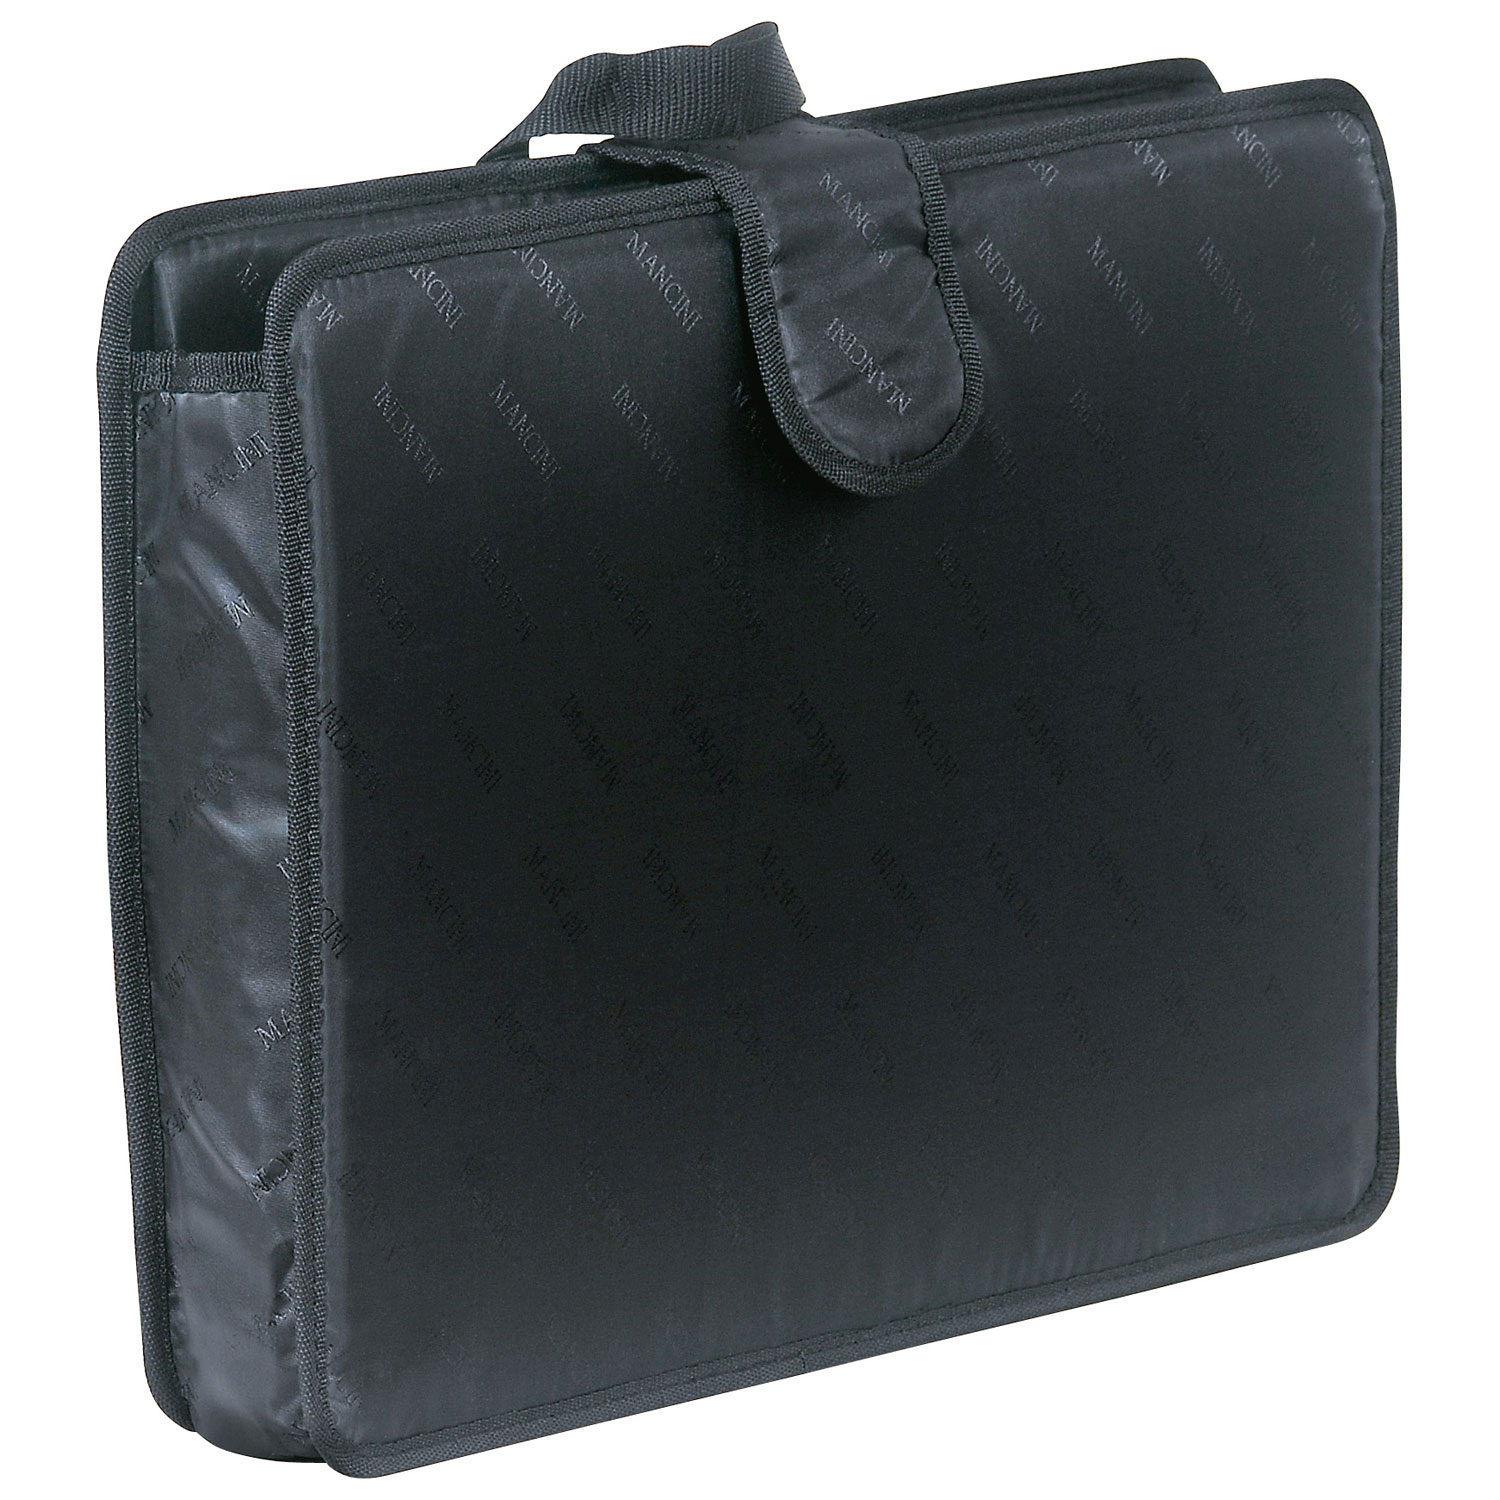 Mancini 90469-Bk Wheeled Catalog Case Black International Carry-On 